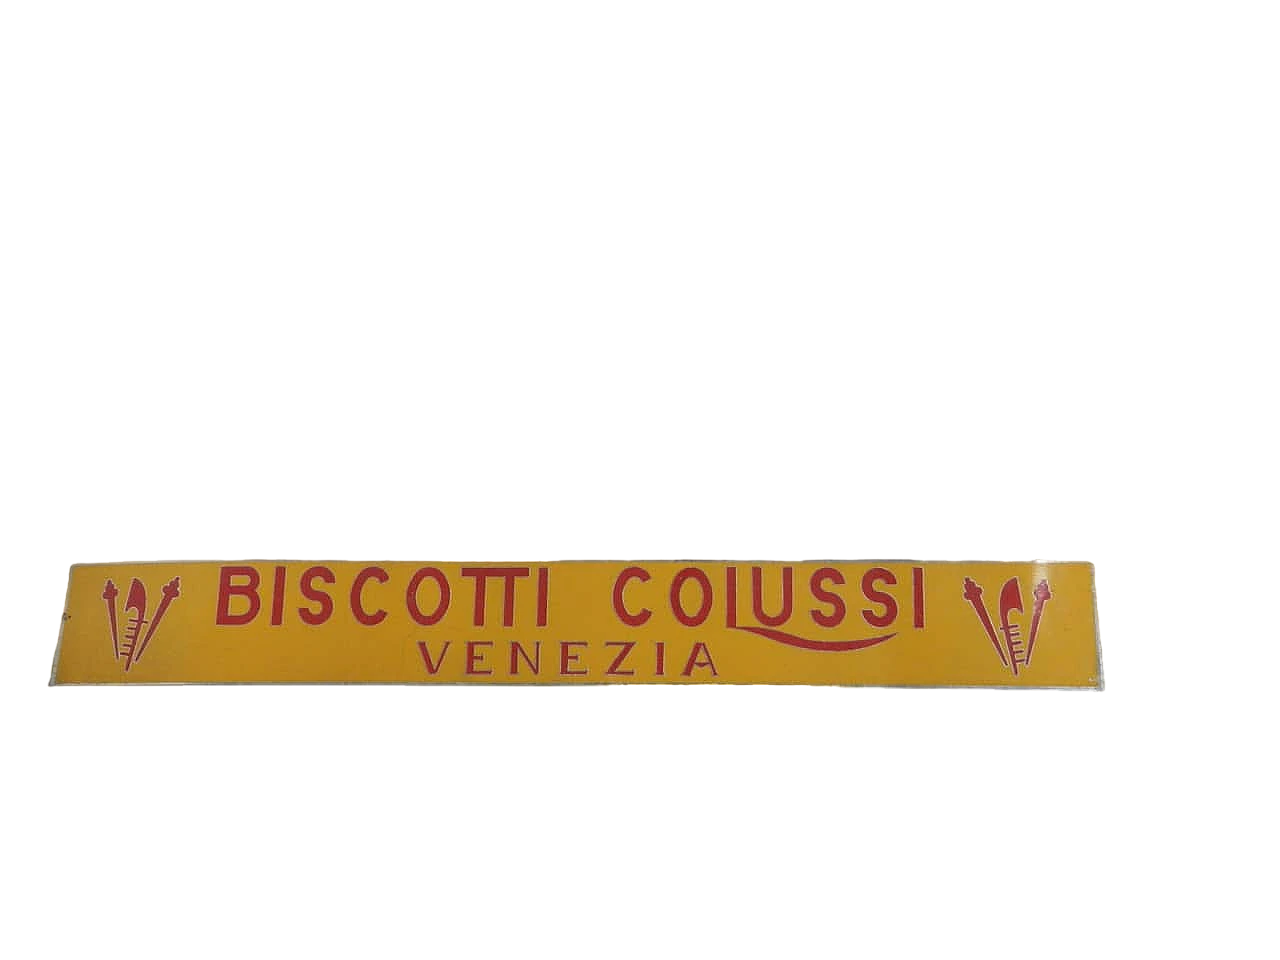 Biscotti Colussi Venezia sign, 1950s 9